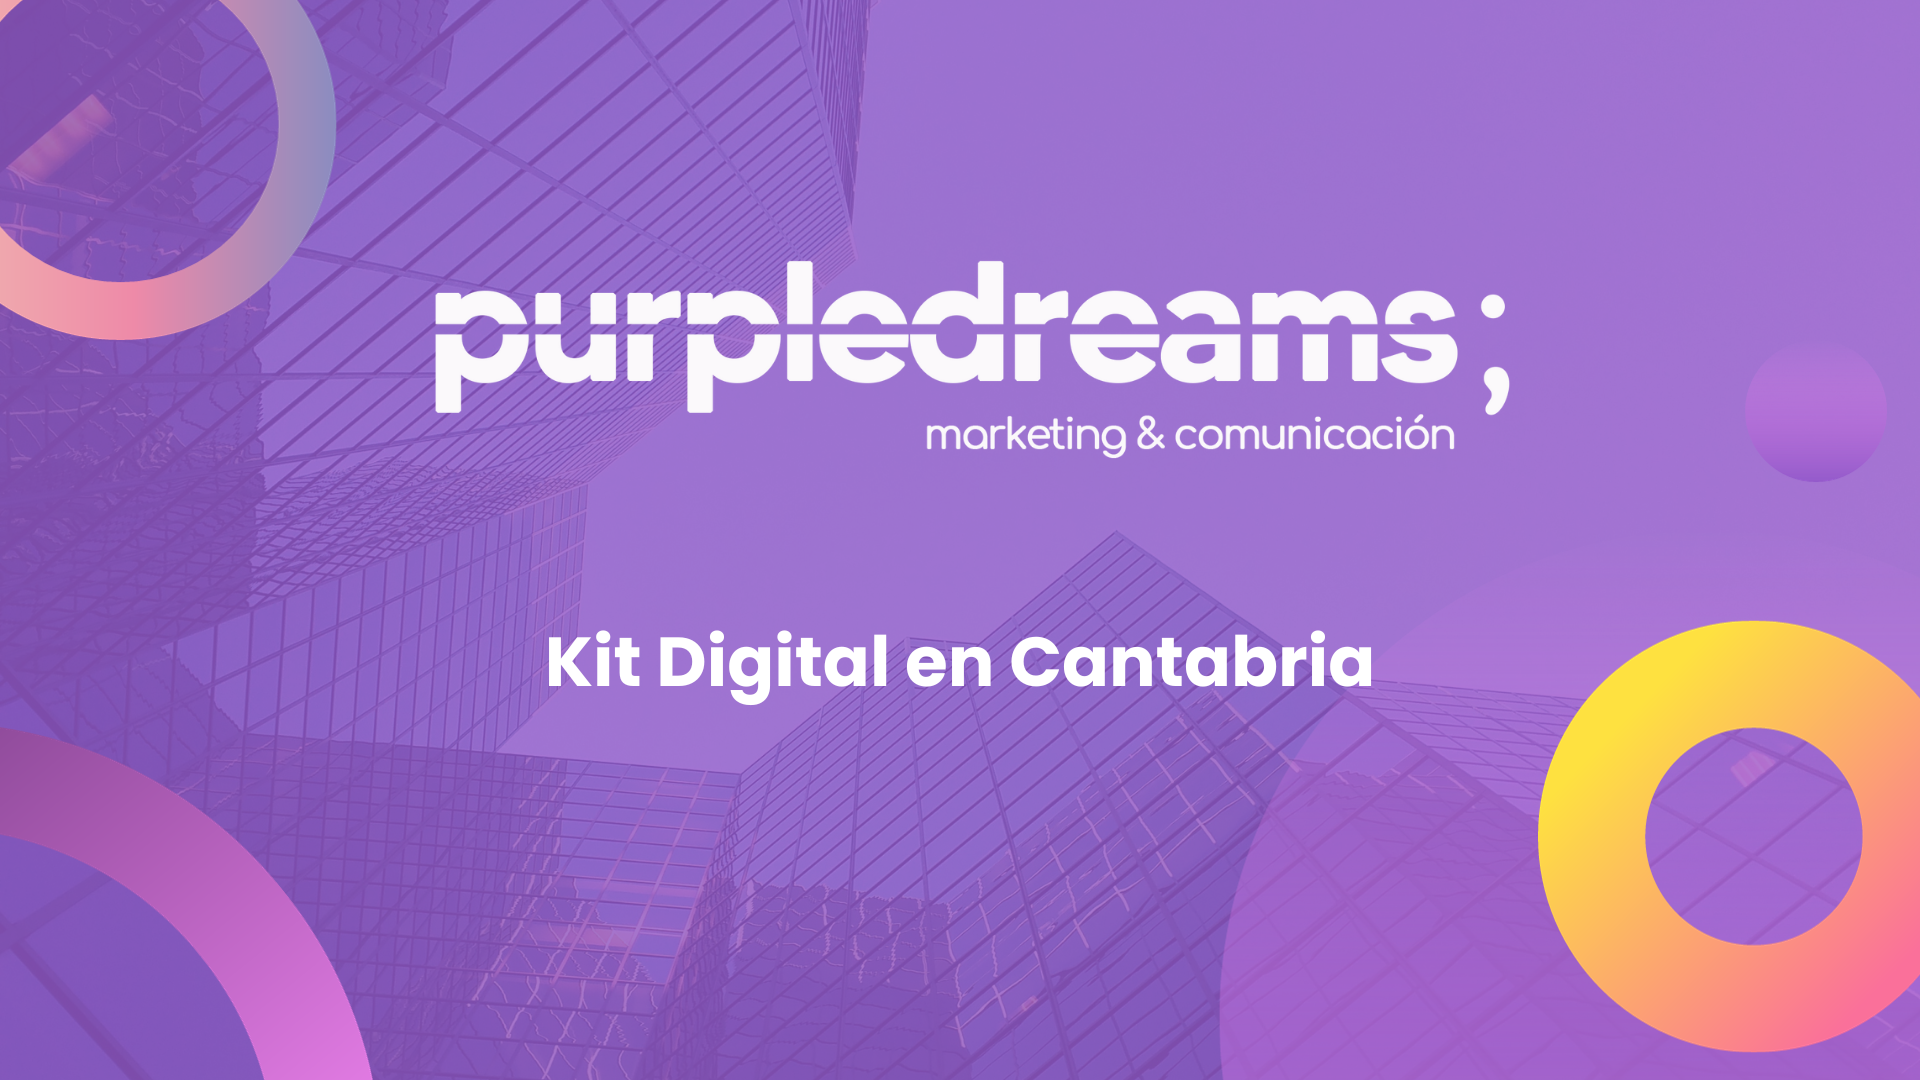 (c) Purpledreams.es